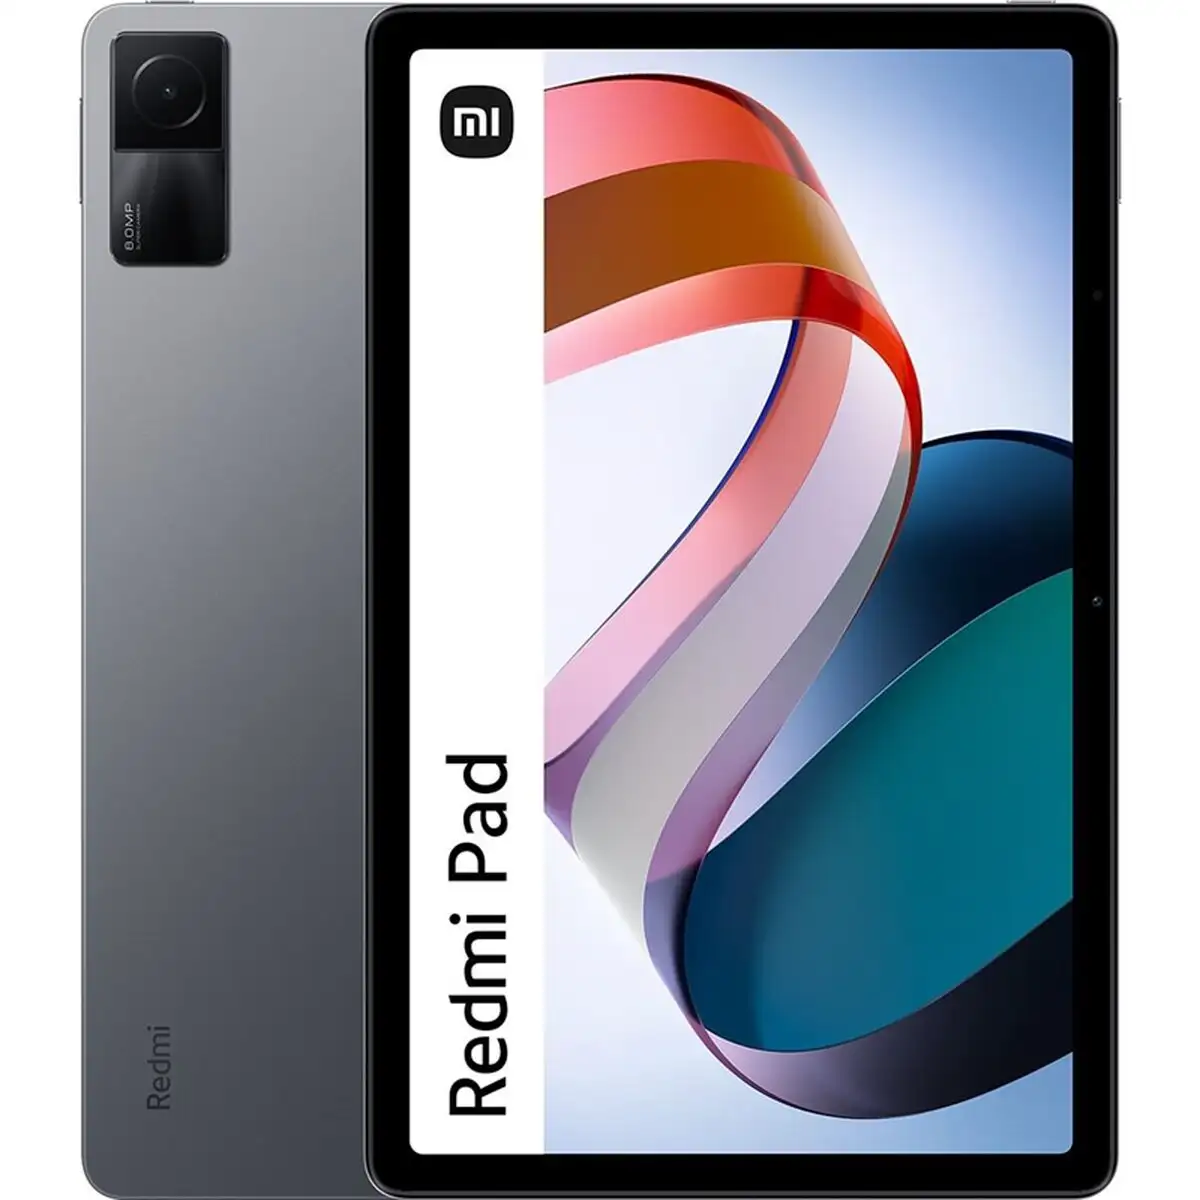 Tablette xiaomi redmi pad 64 gb 3 gb ram 2k 10 6 _8437. Bienvenue chez DIAYTAR SENEGAL - Où Choisir est un Voyage. Plongez dans notre plateforme en ligne pour trouver des produits qui ajoutent de la couleur et de la texture à votre quotidien.